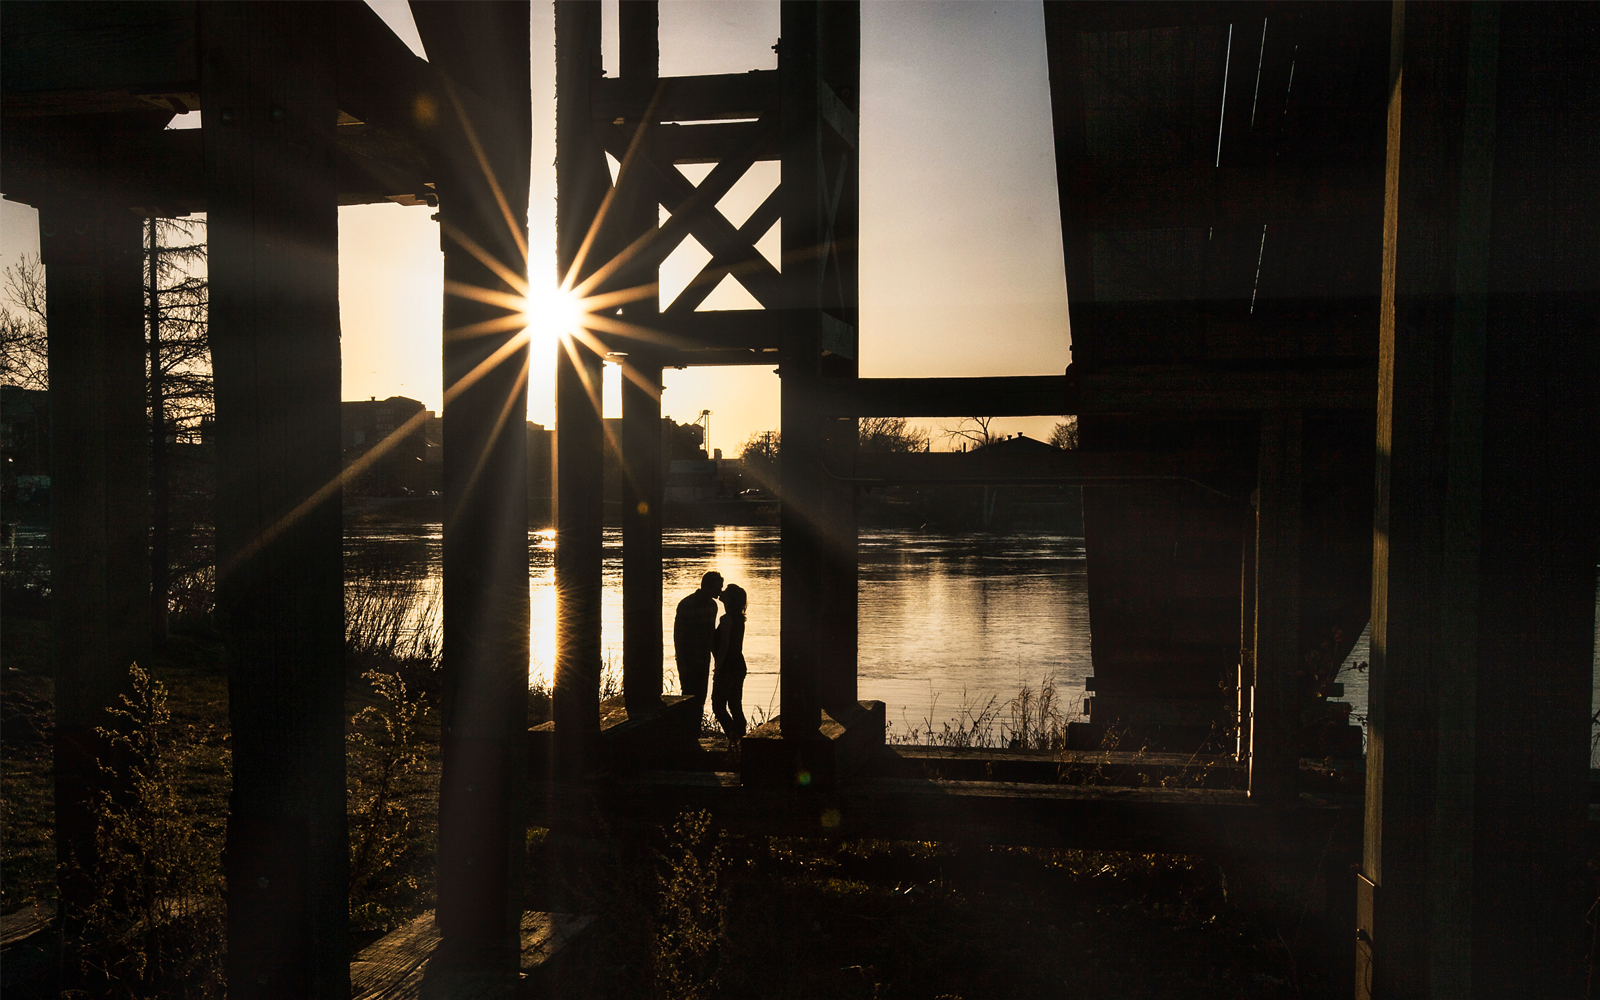 Kissing under the toboggan bridge at sunset